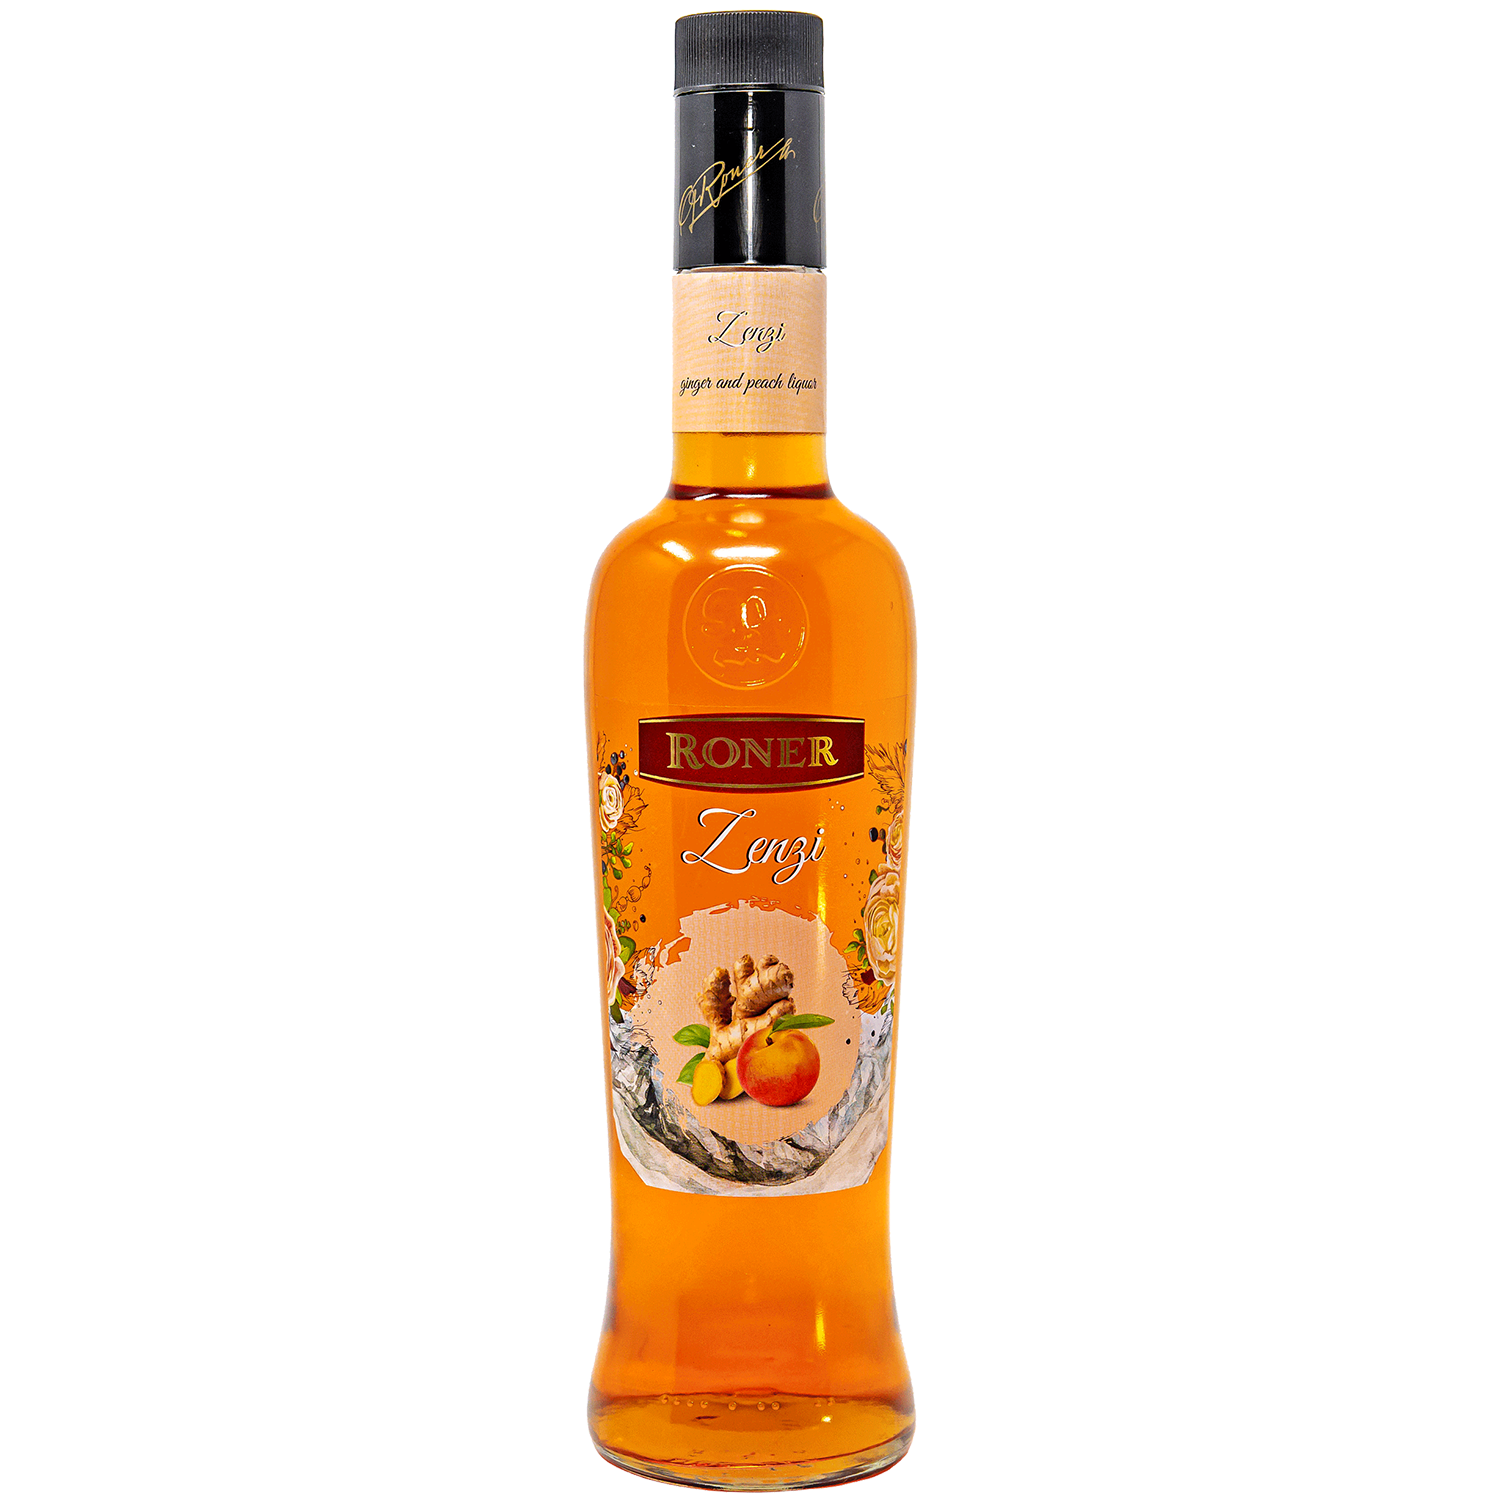 Zenzi Ginger Peach Liqueur by Roner in 700ml bottle